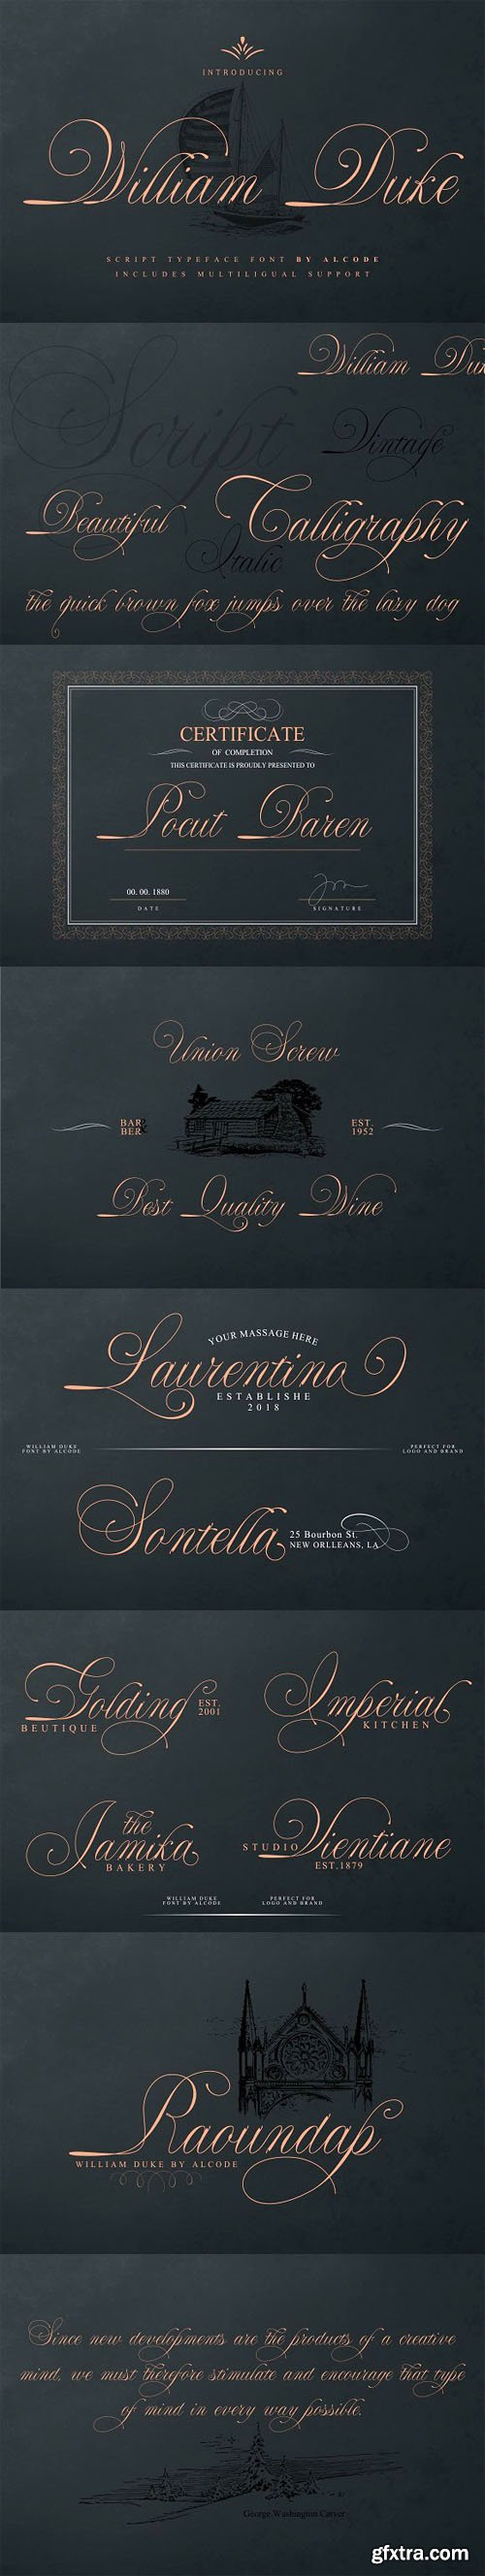 William Duke - Script Typeface Font